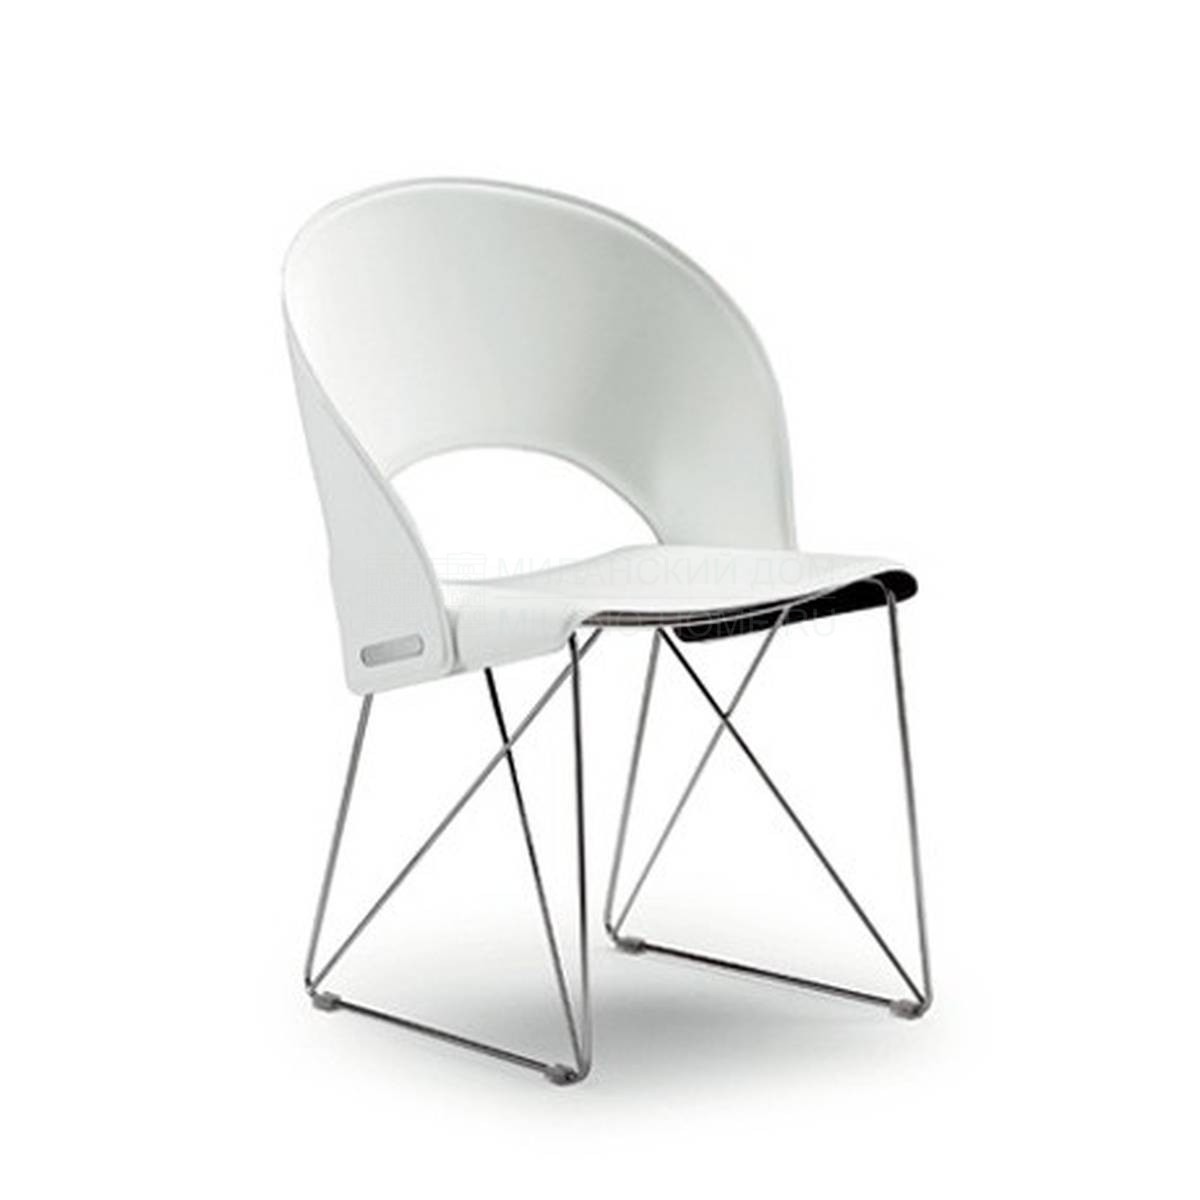 Металлический / Пластиковый стул Arcos из Италии фабрики TONON